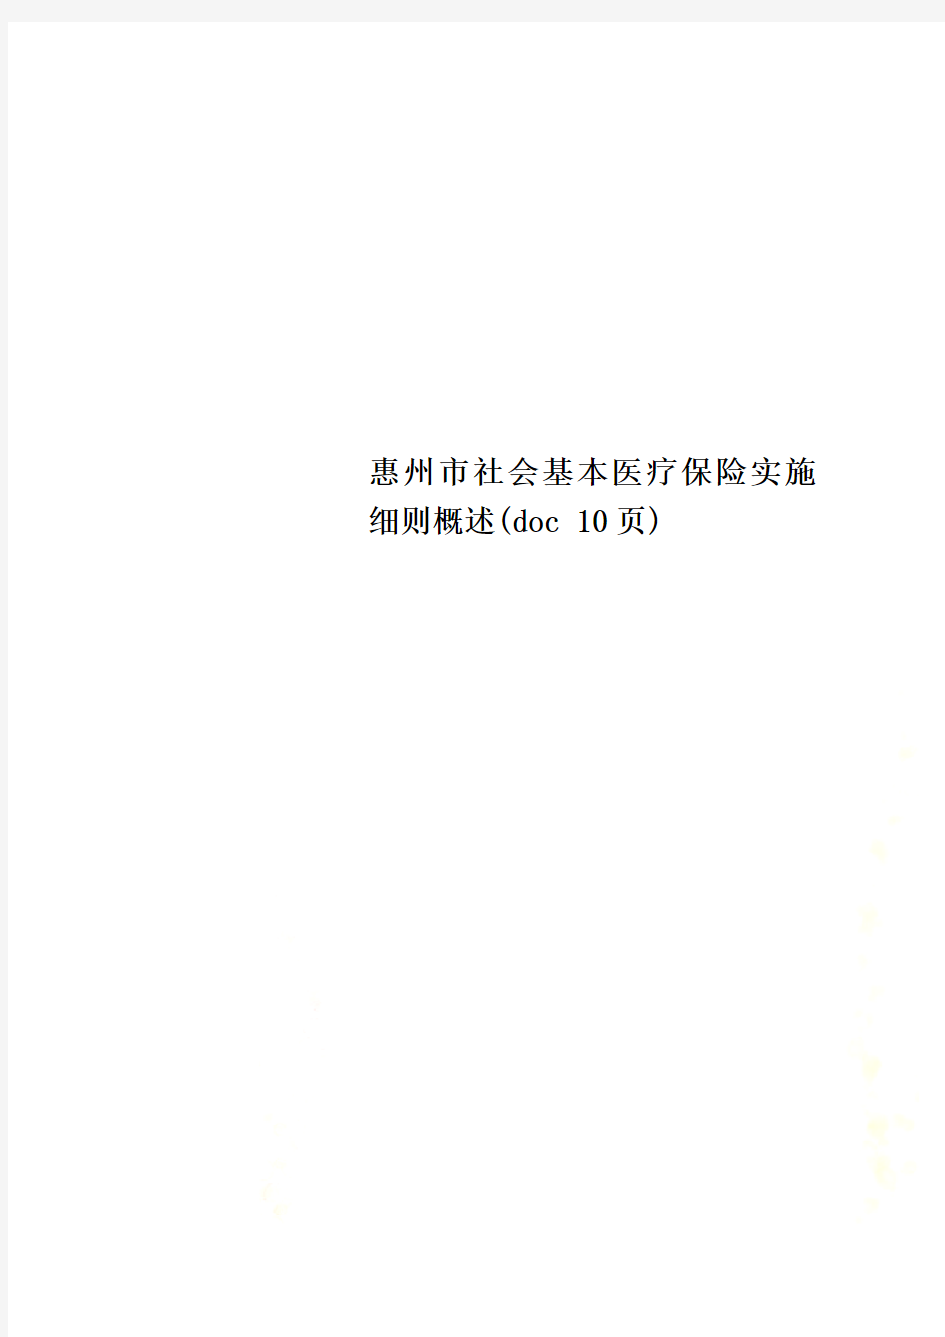 惠州市社会基本医疗保险实施细则概述(doc 10页)